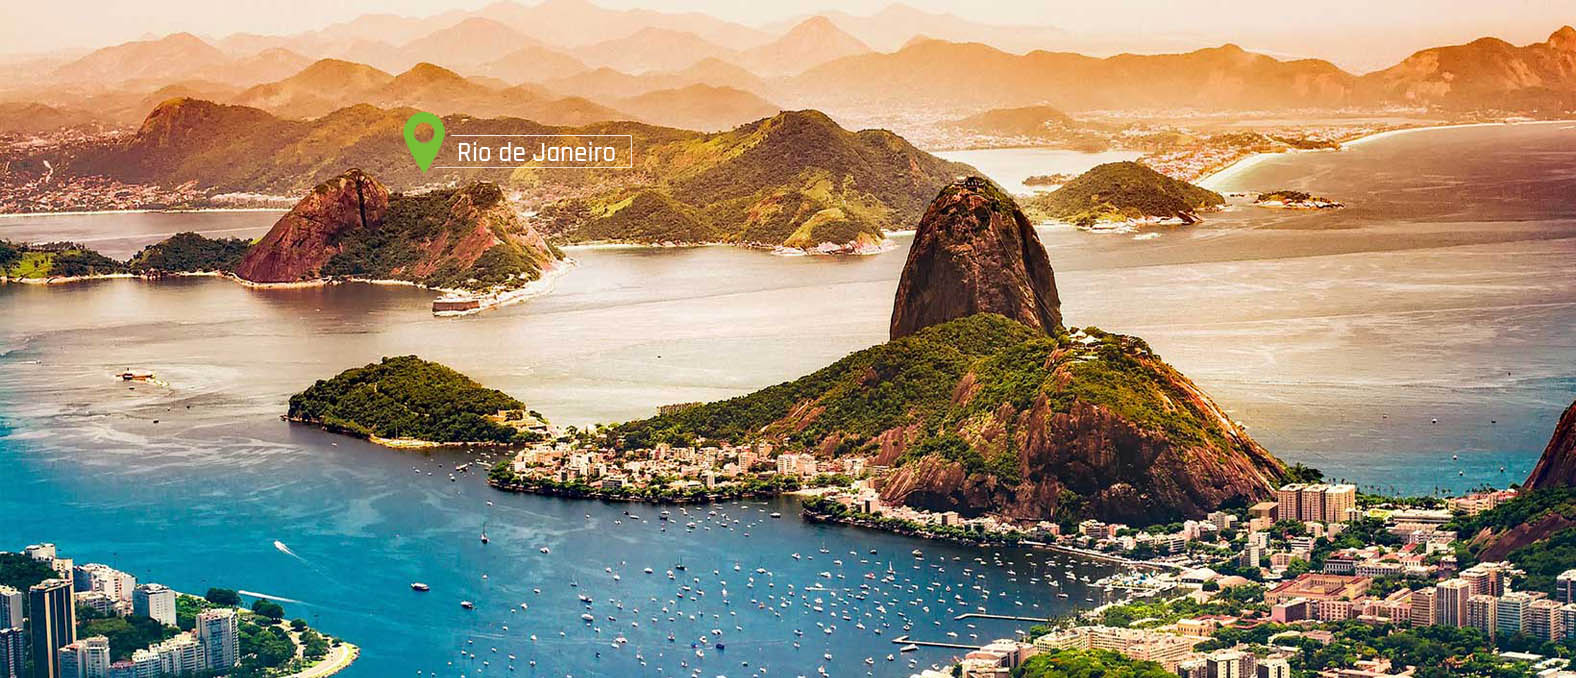 Rio-de-Janeiro-slide-desktop